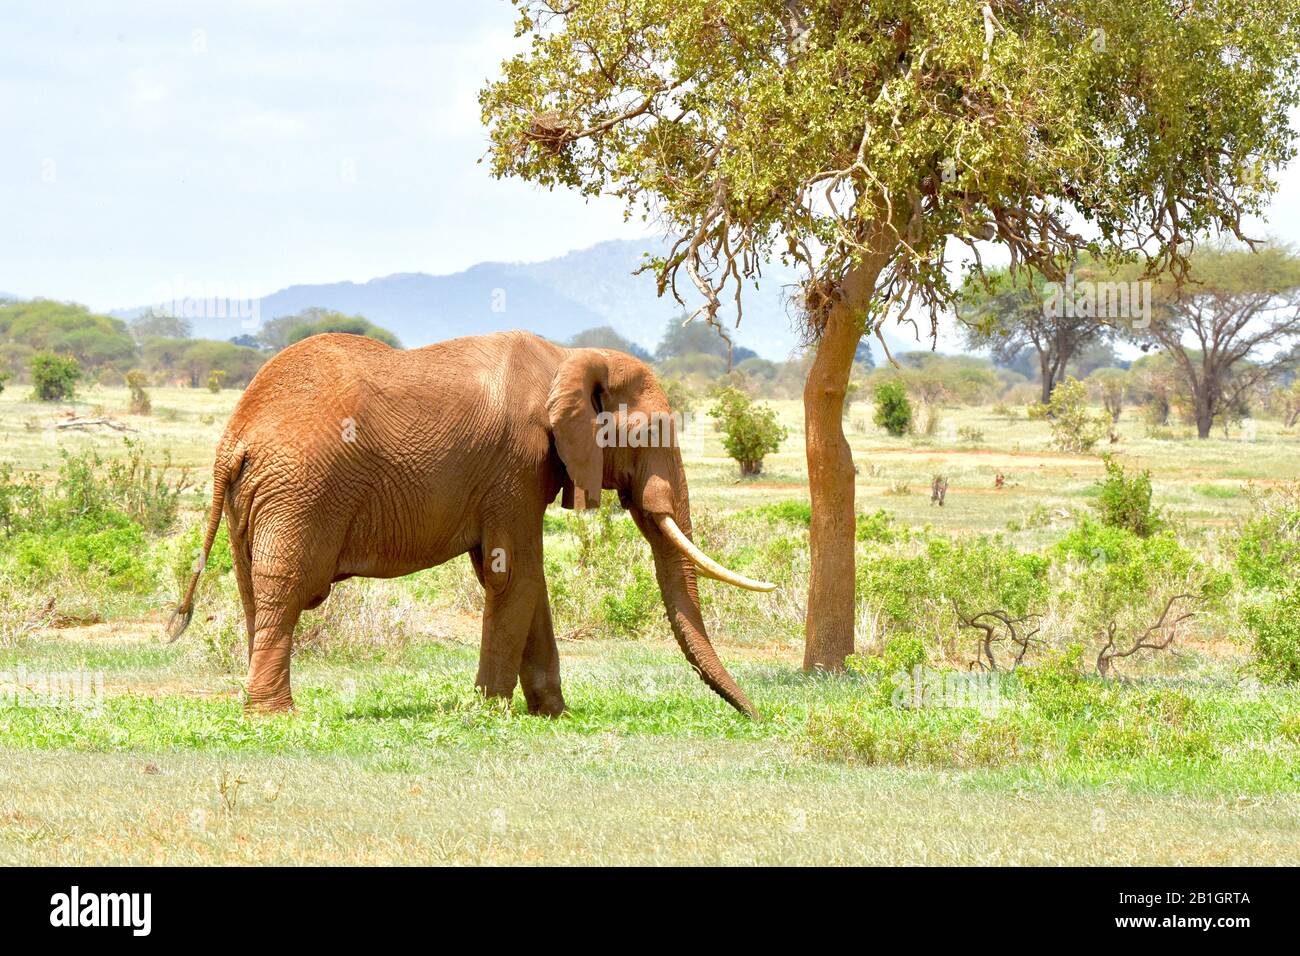 Elefante toro grande (Loxodonta africana) alimentándose en un paisaje de arbustos secos. Espacio de copia. Foto de stock